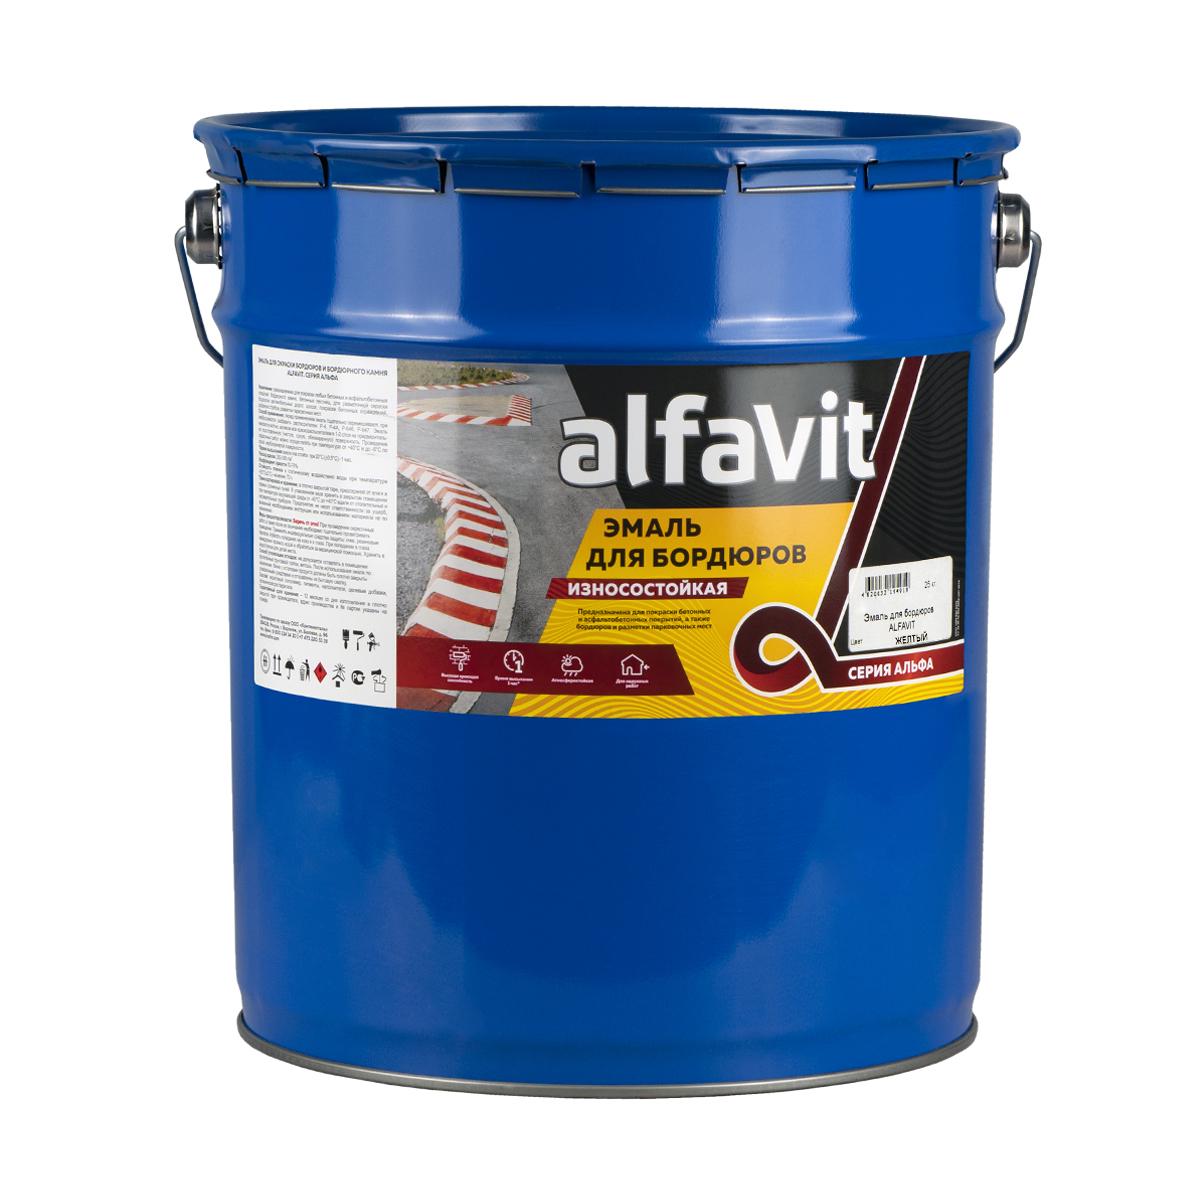 Купить Эмаль для бордюров (износостойкая) "Alfavit" черная 25 кг (1) серия альфа